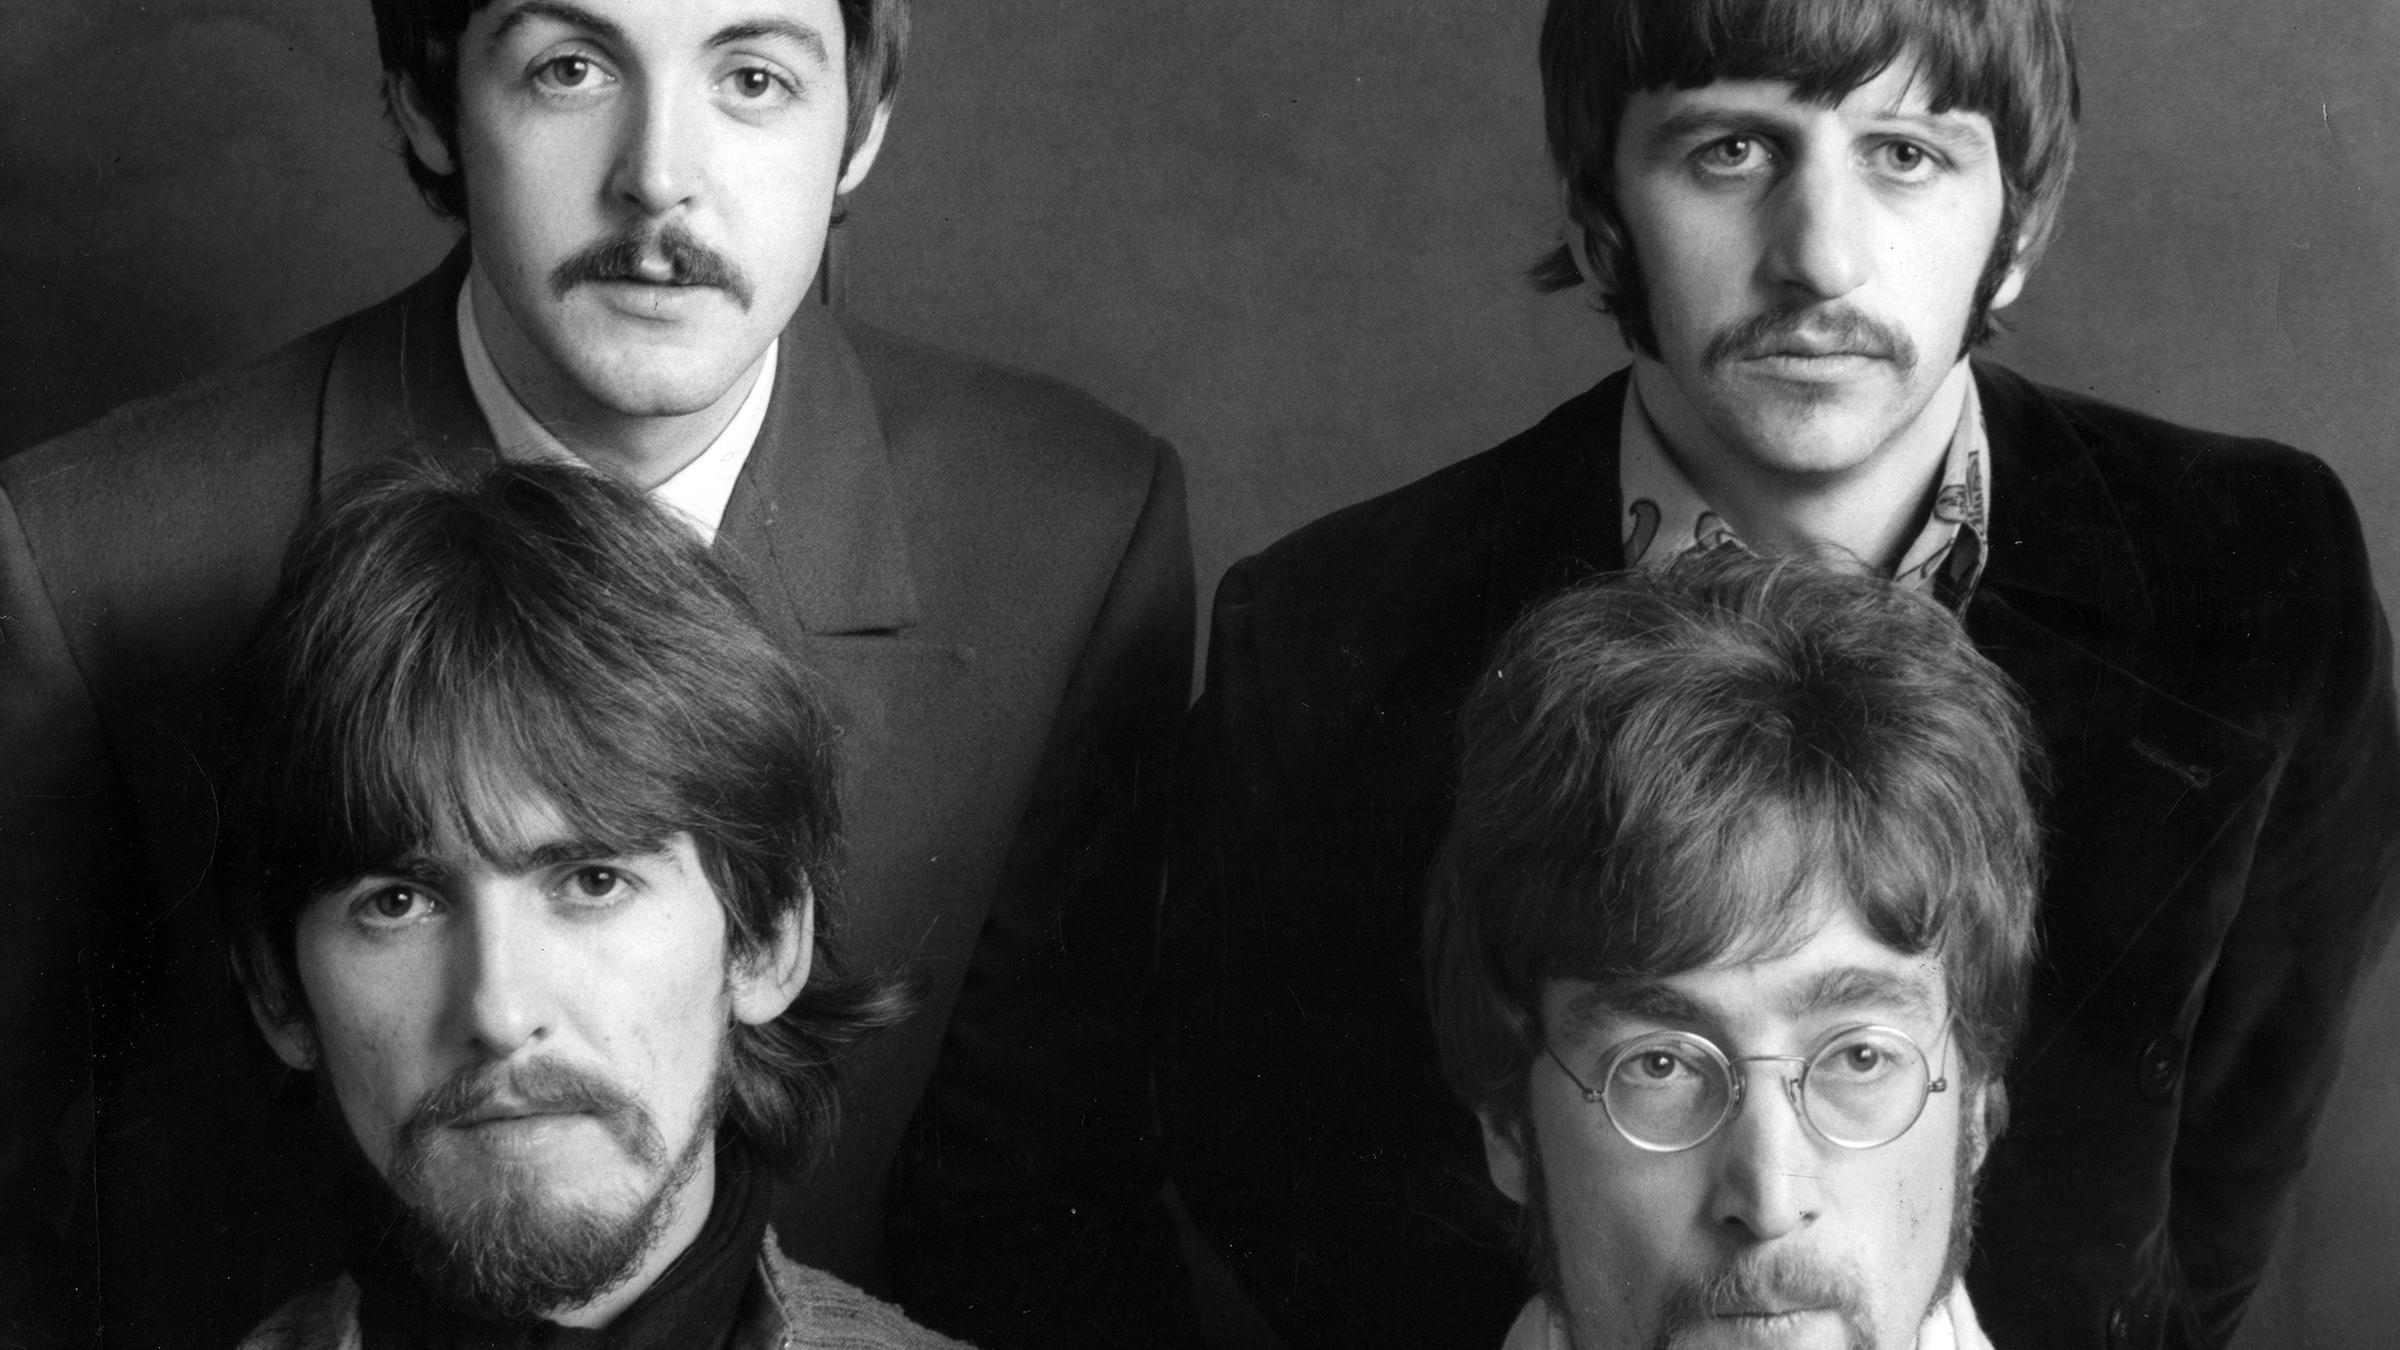 28. September: Der Beatles-Song "Hey Jude" erreicht die Spitze der US-Charts und wird zum größten Hit des Jahres.